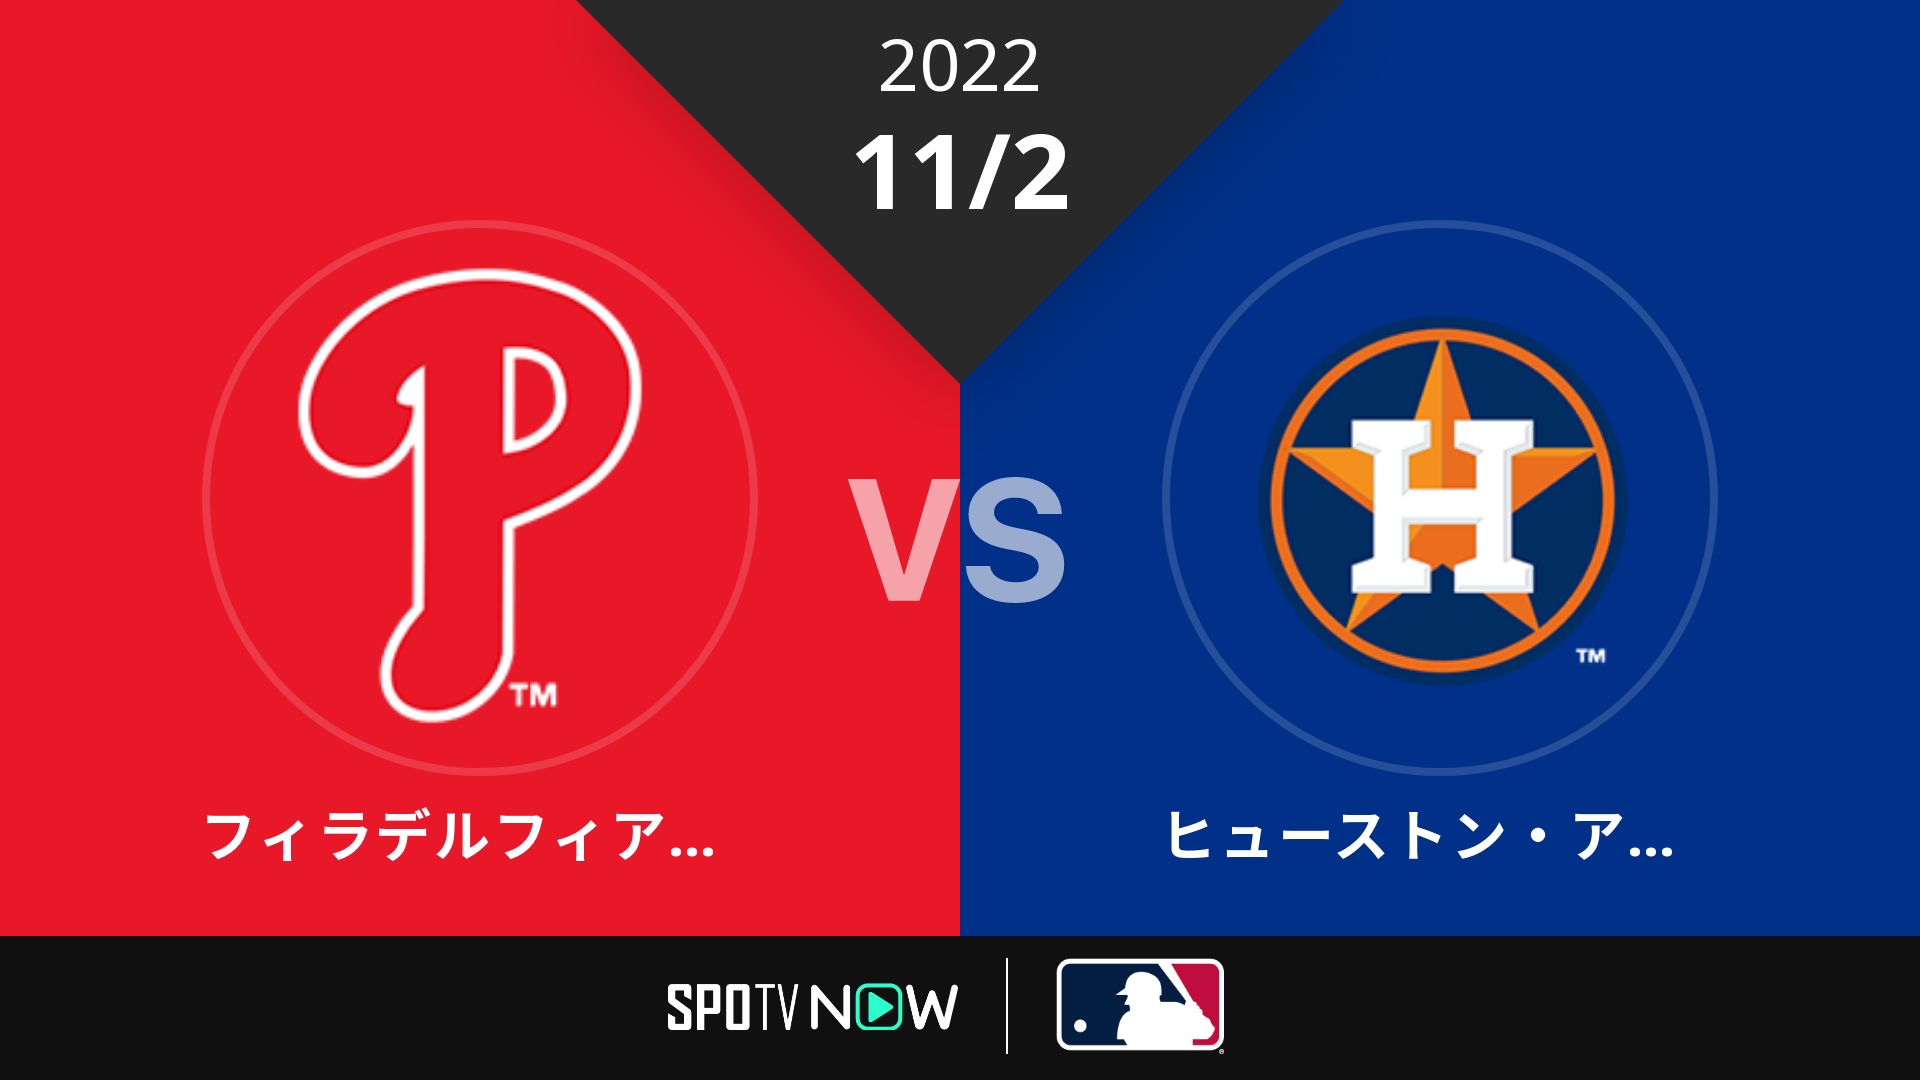 2022/11/2 フィリーズ vs アストロズ [MLB]